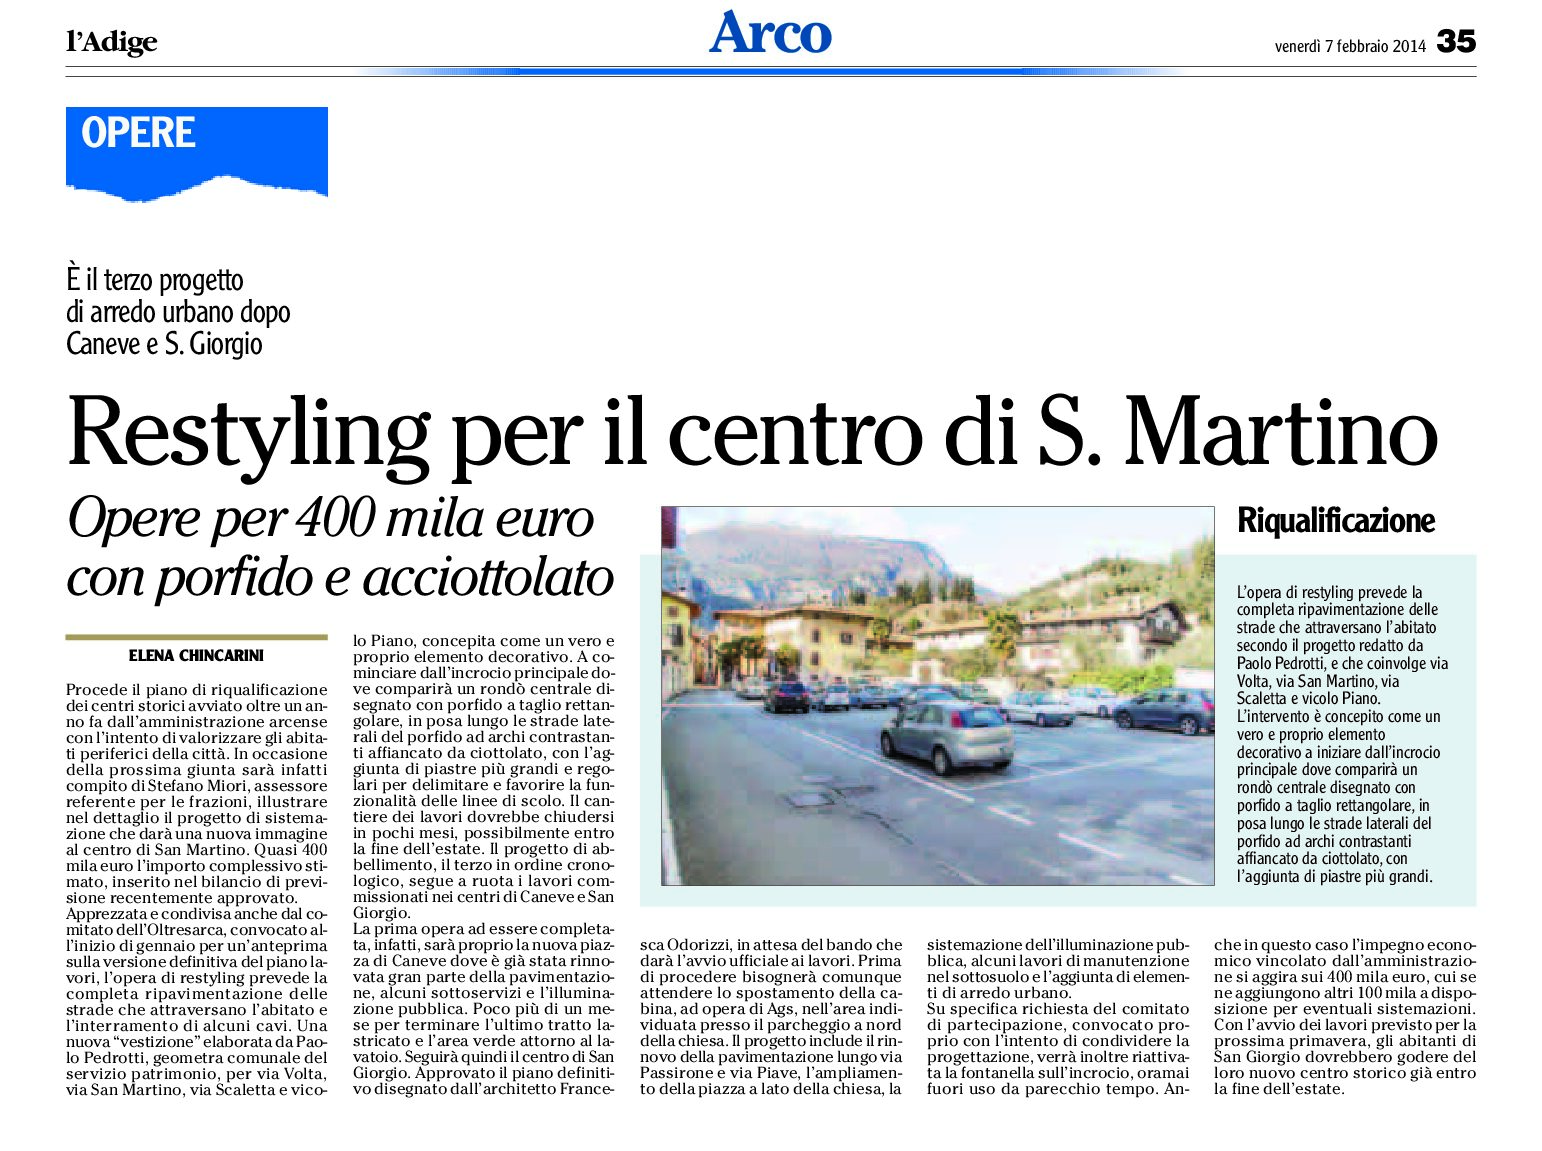 Arco: restyling per il centro di S. Martino